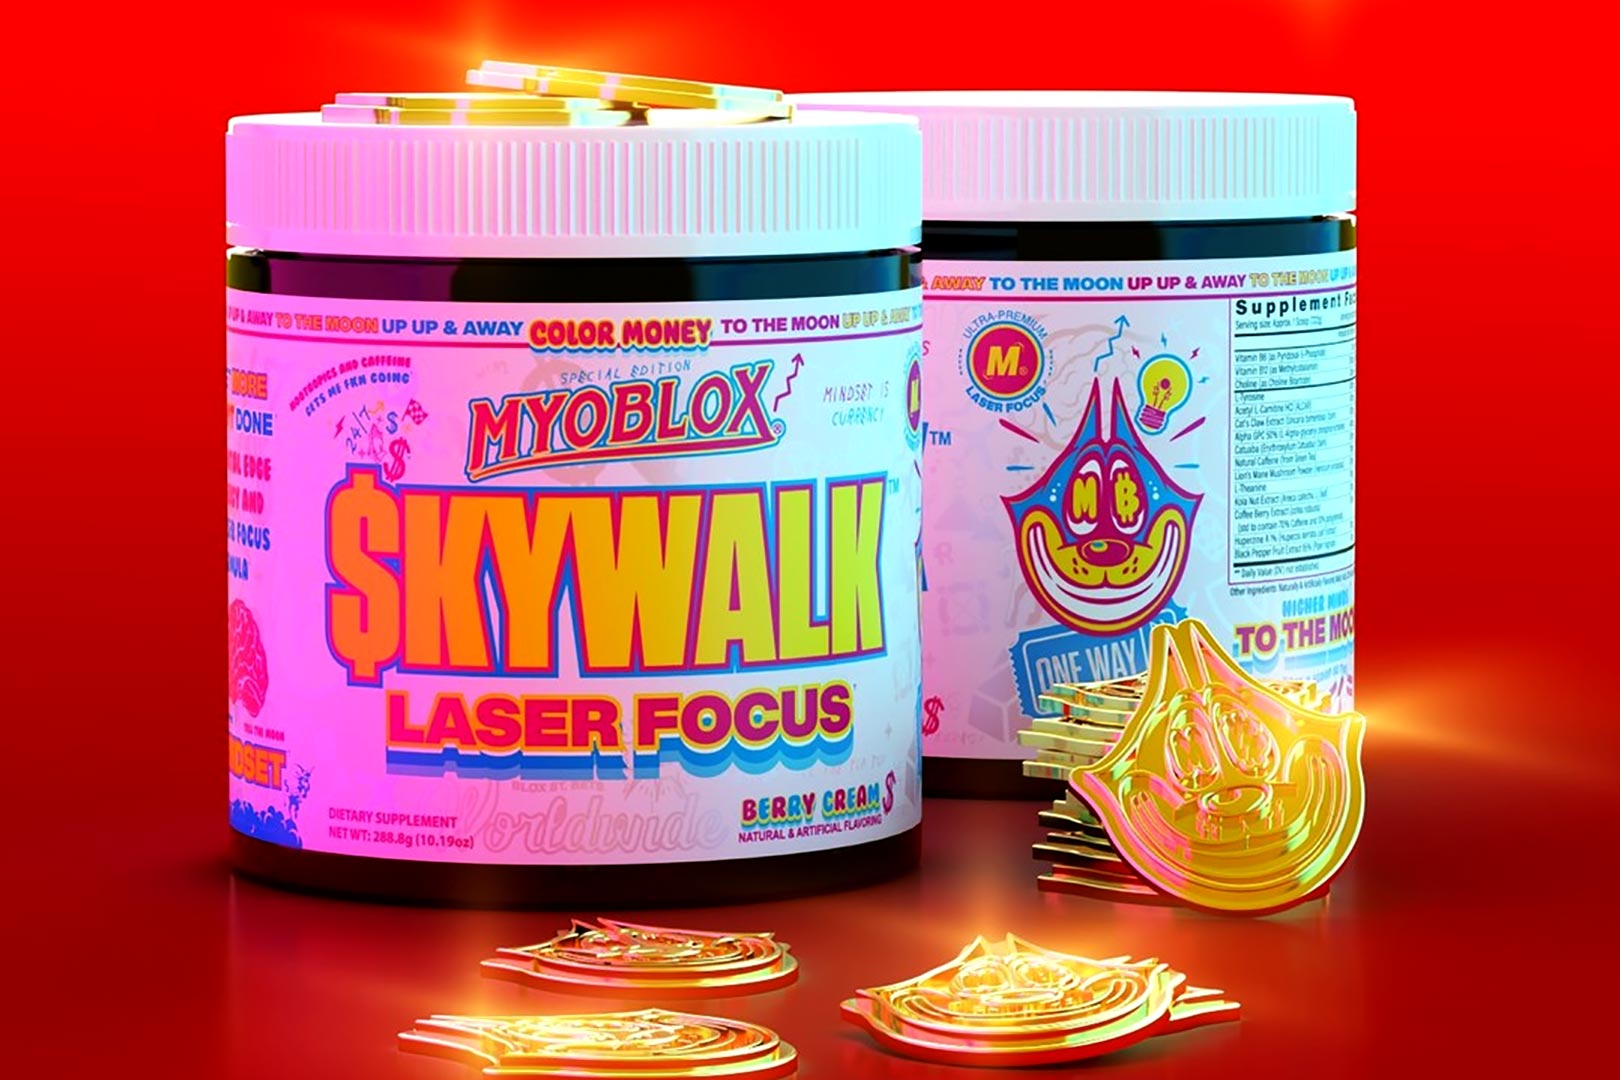 Myobox Skywalk Color Money